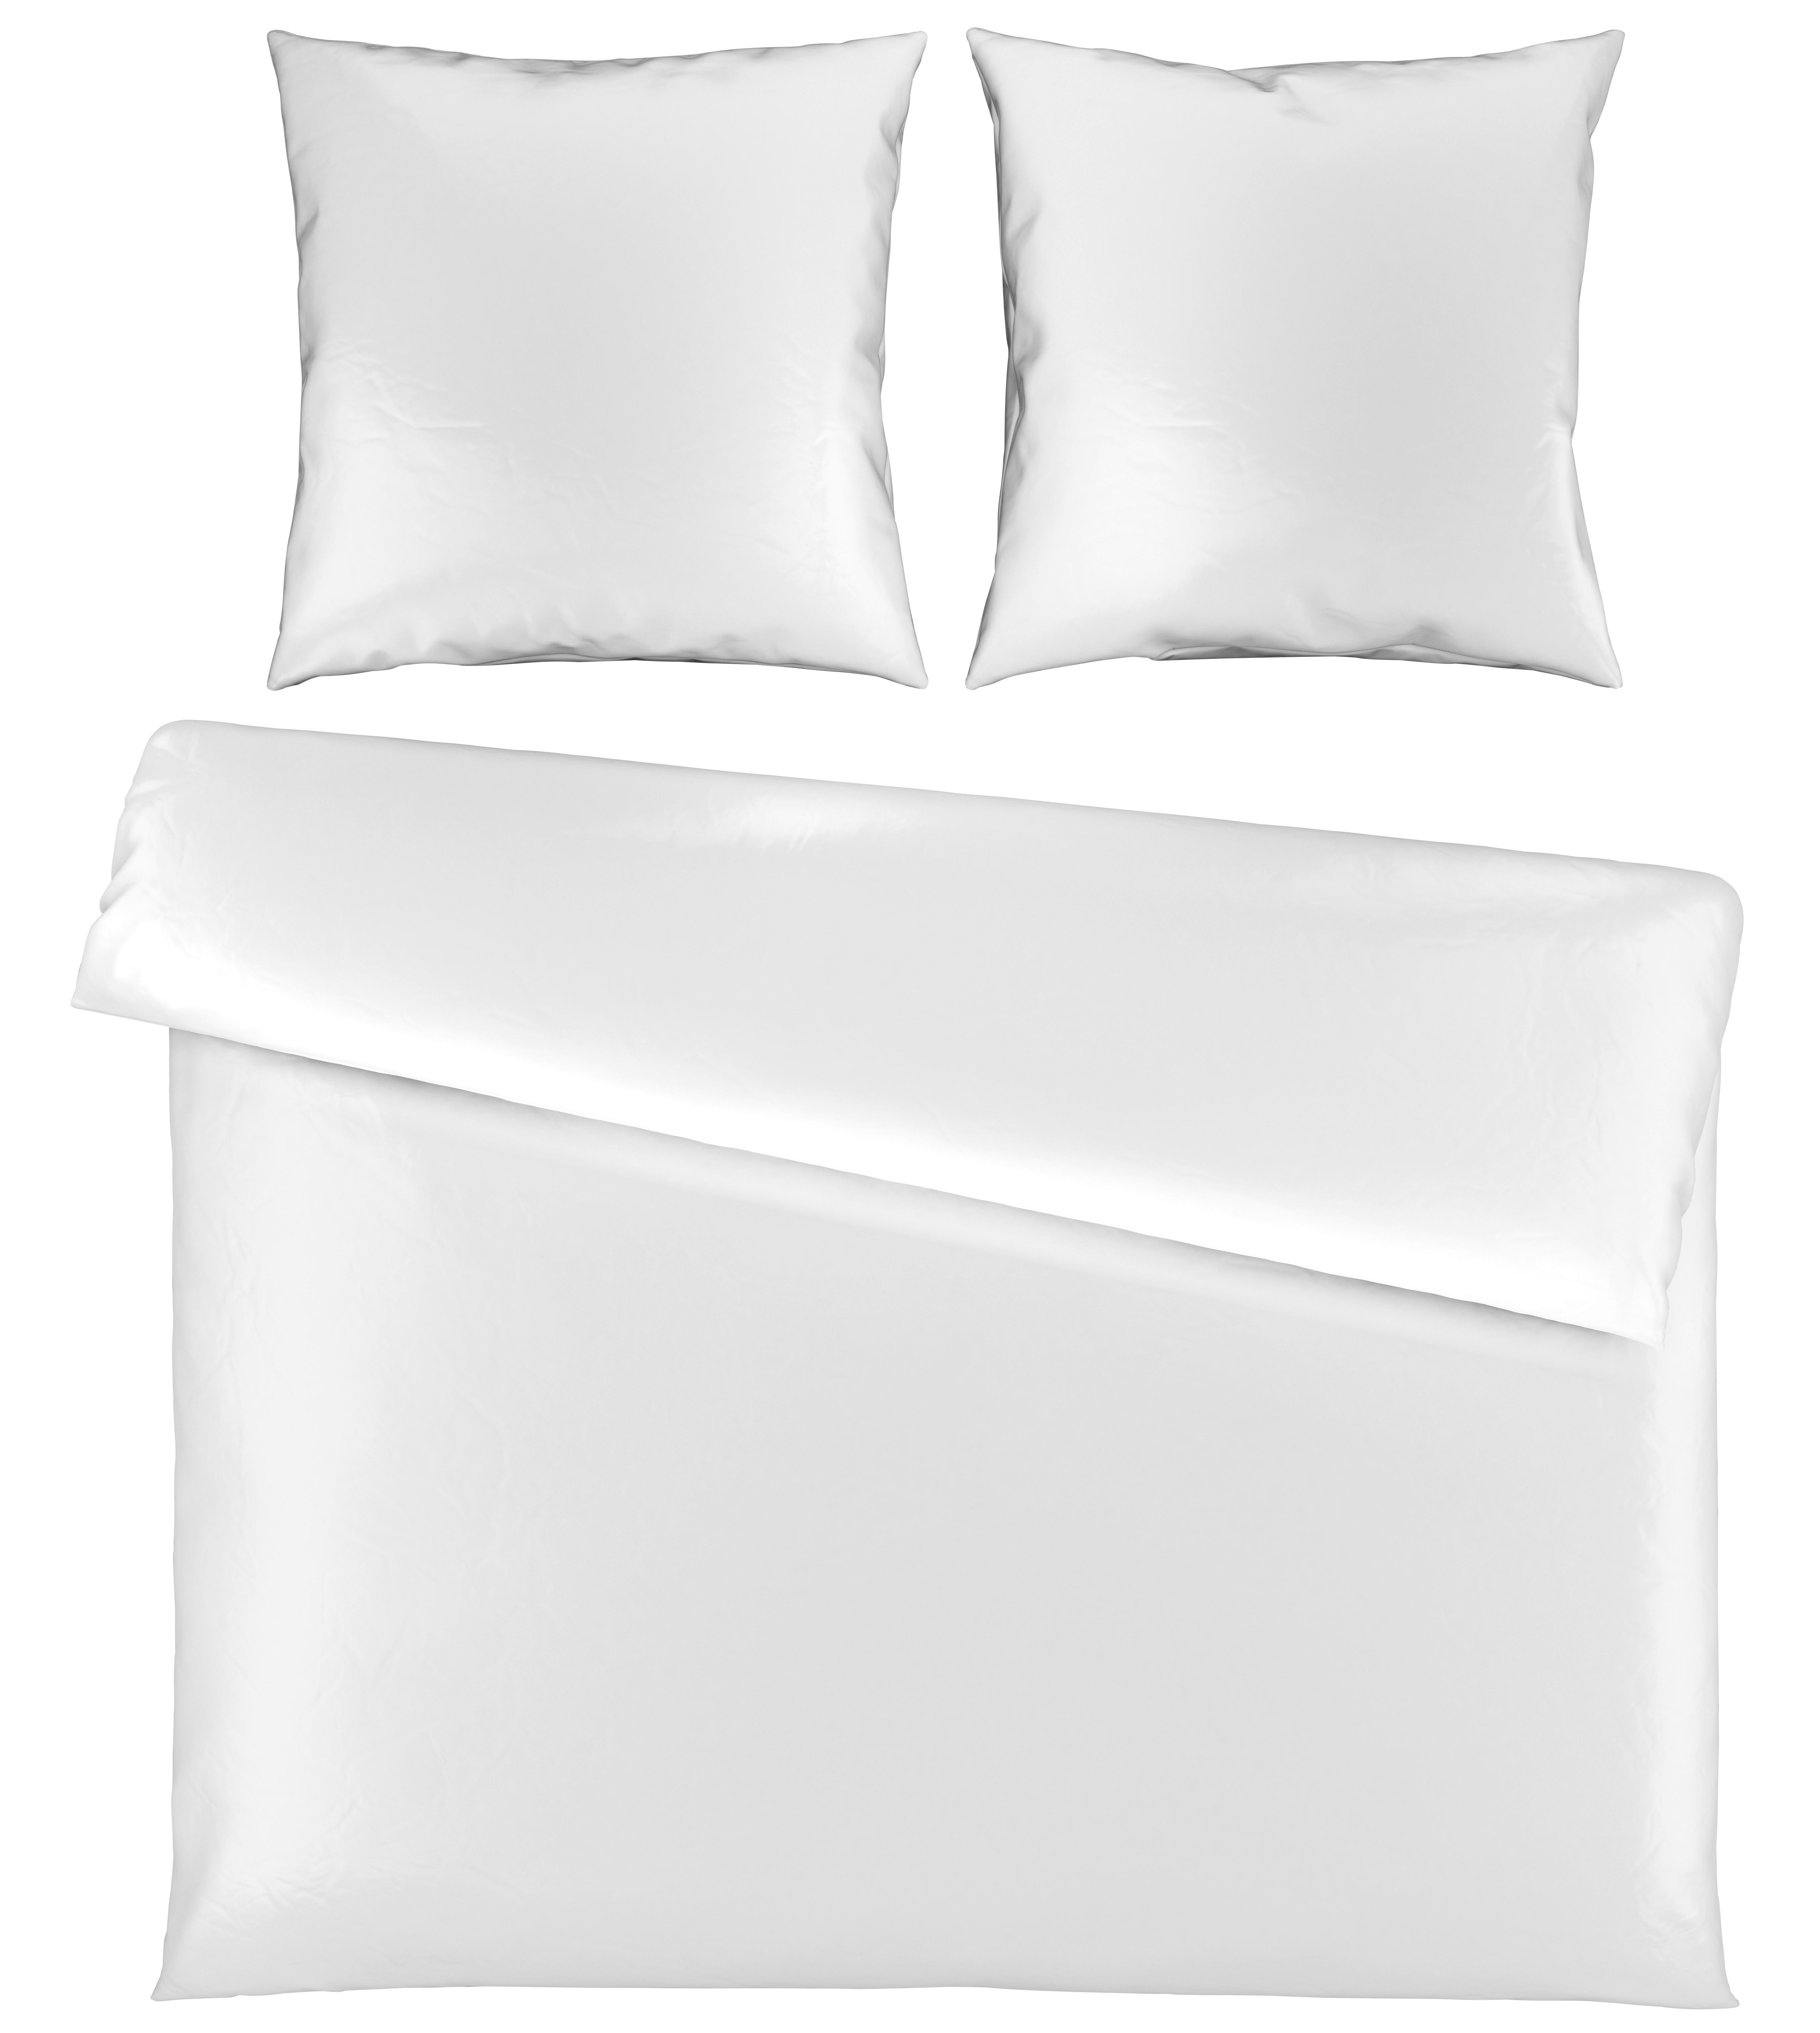 Bettwäsche Alex Uni XXL ca. 200x220cm - Weiß, MODERN, Textil (200/220cm) - Premium Living